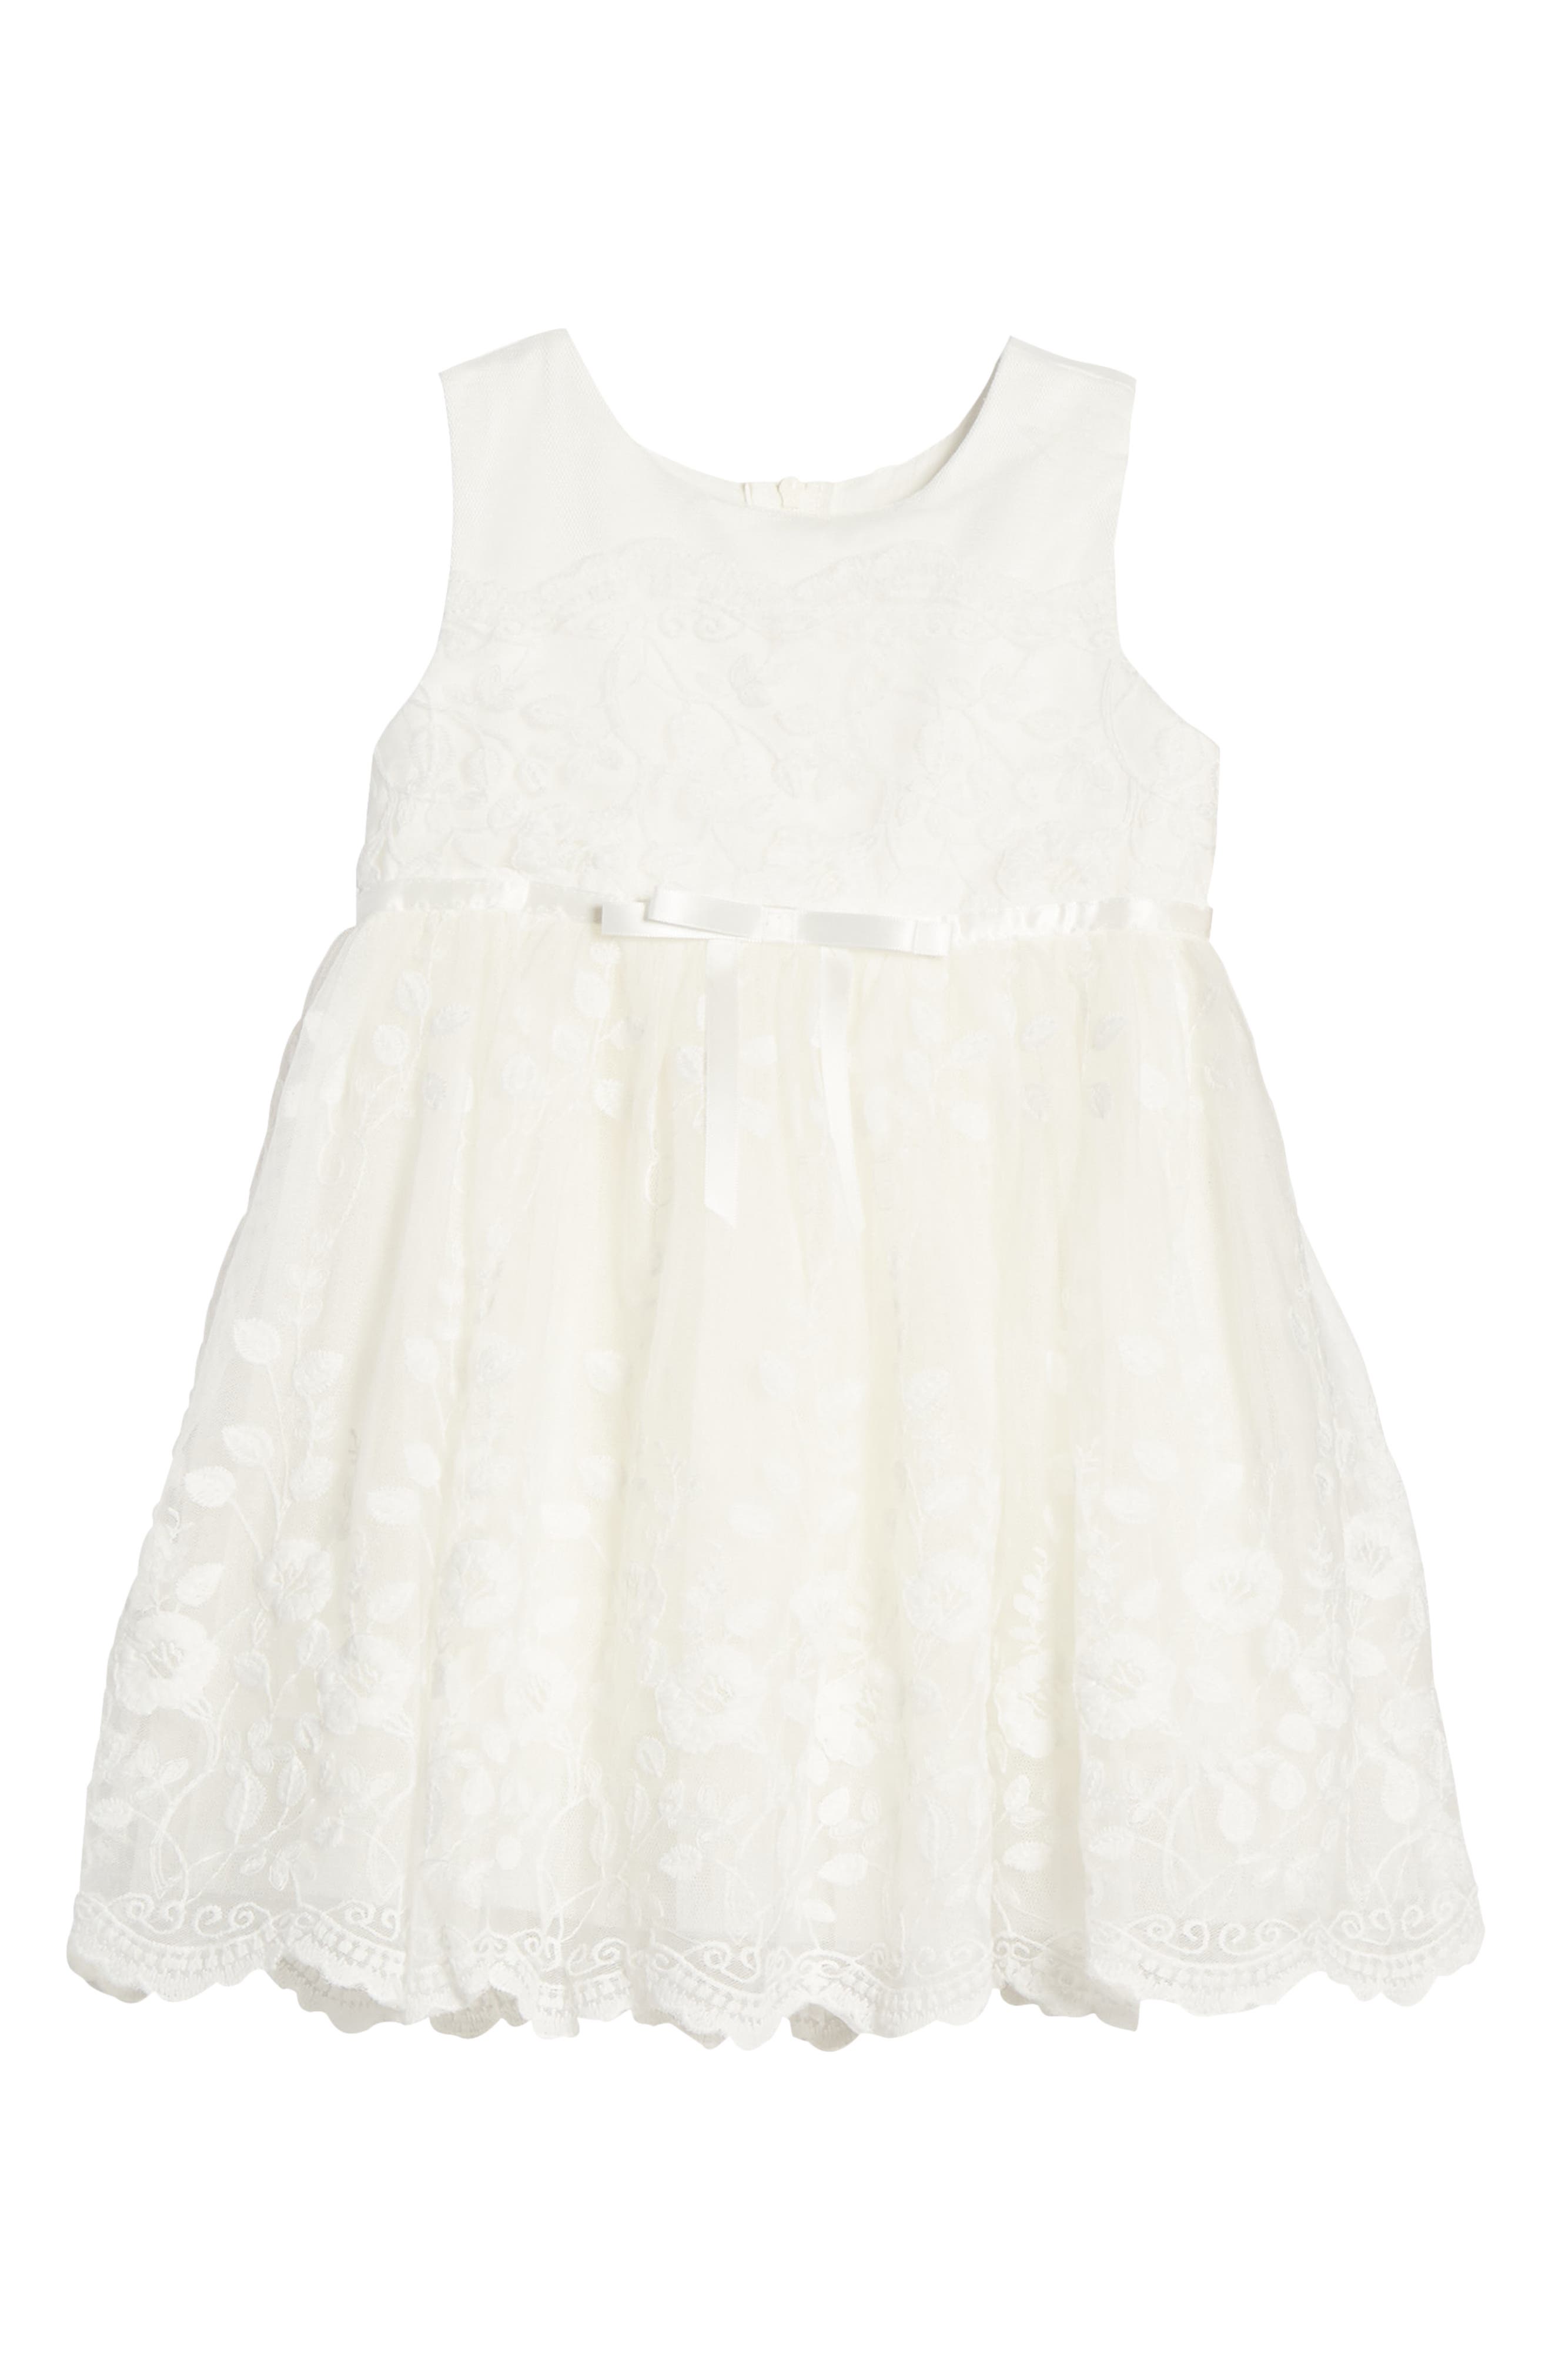 newborn white lace dress